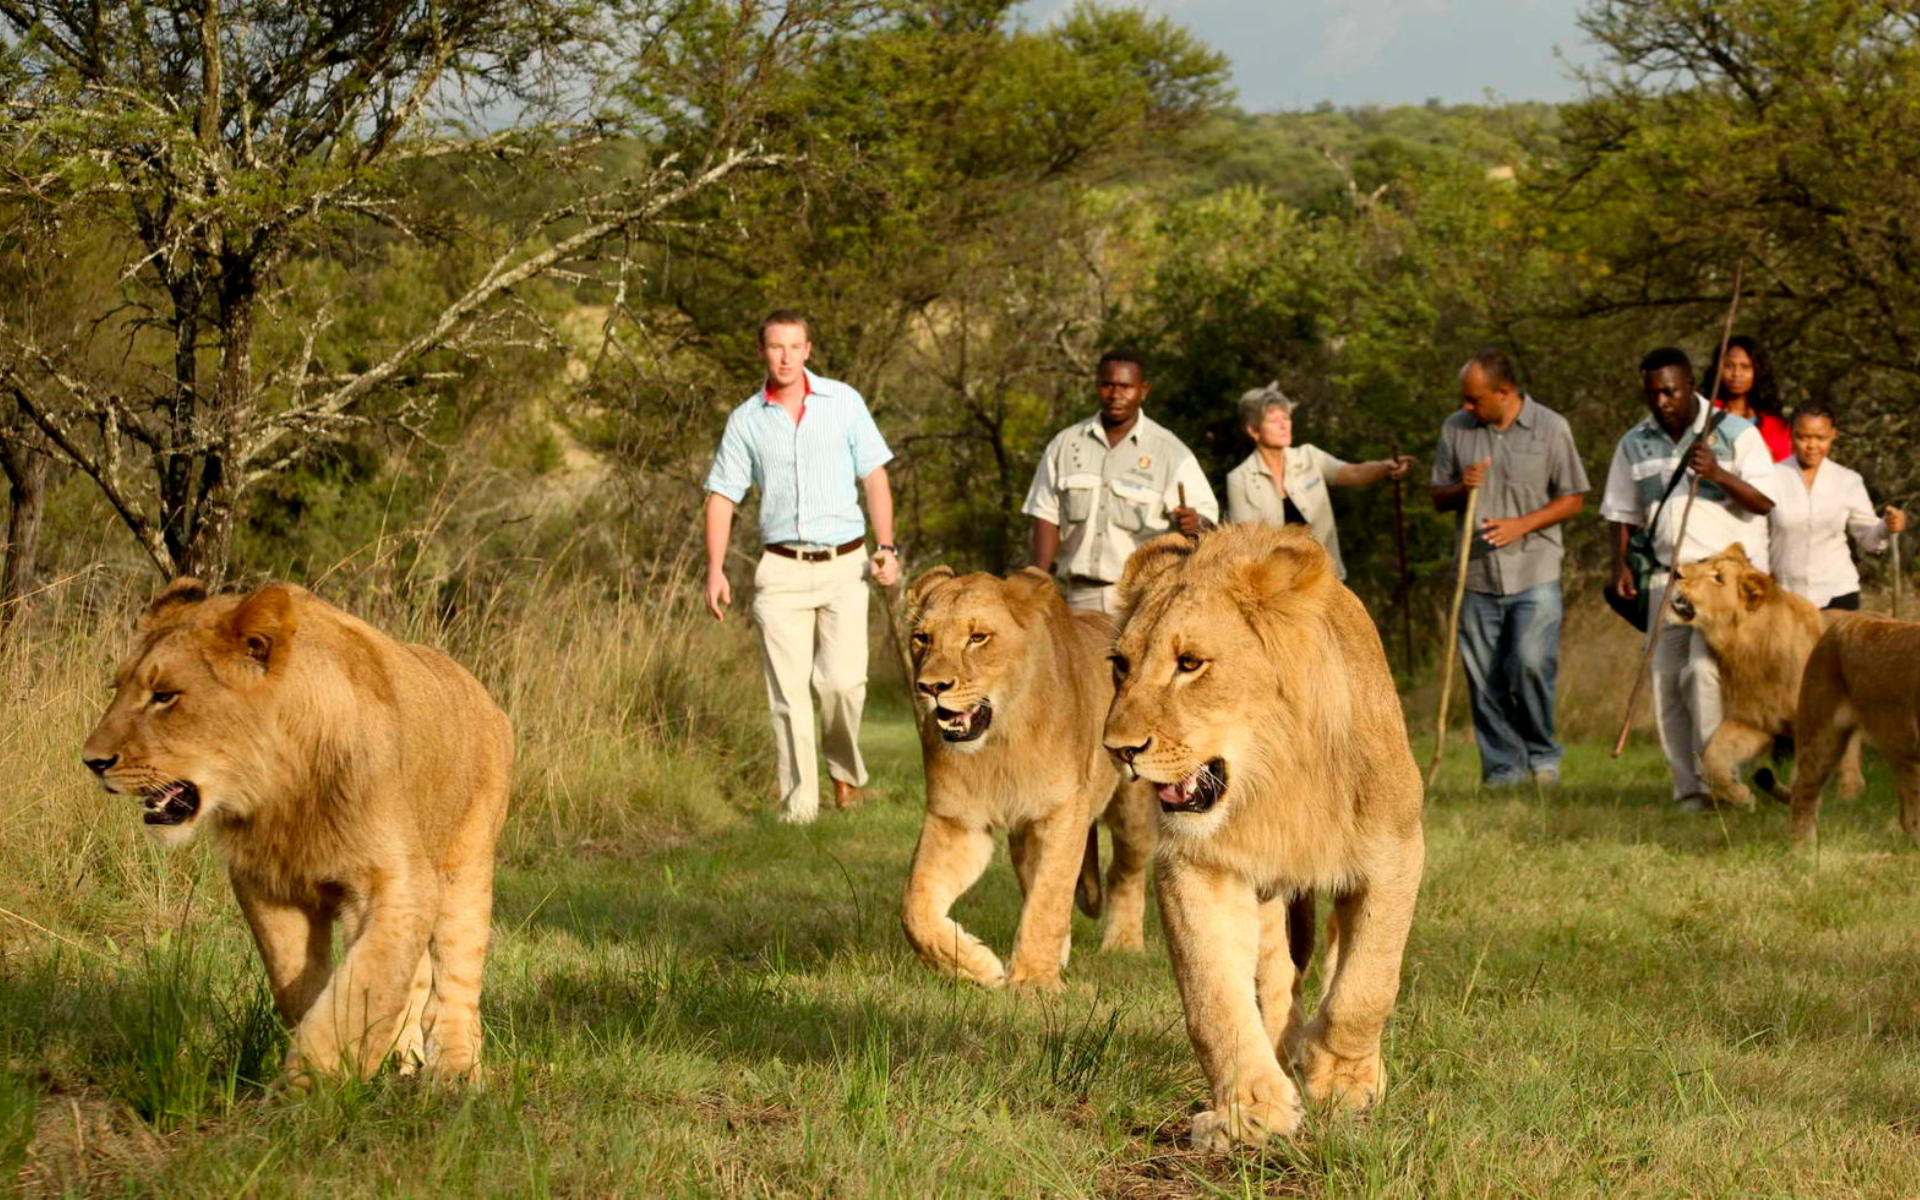 un grupo de turistas caminan detrás de una manada de leones.